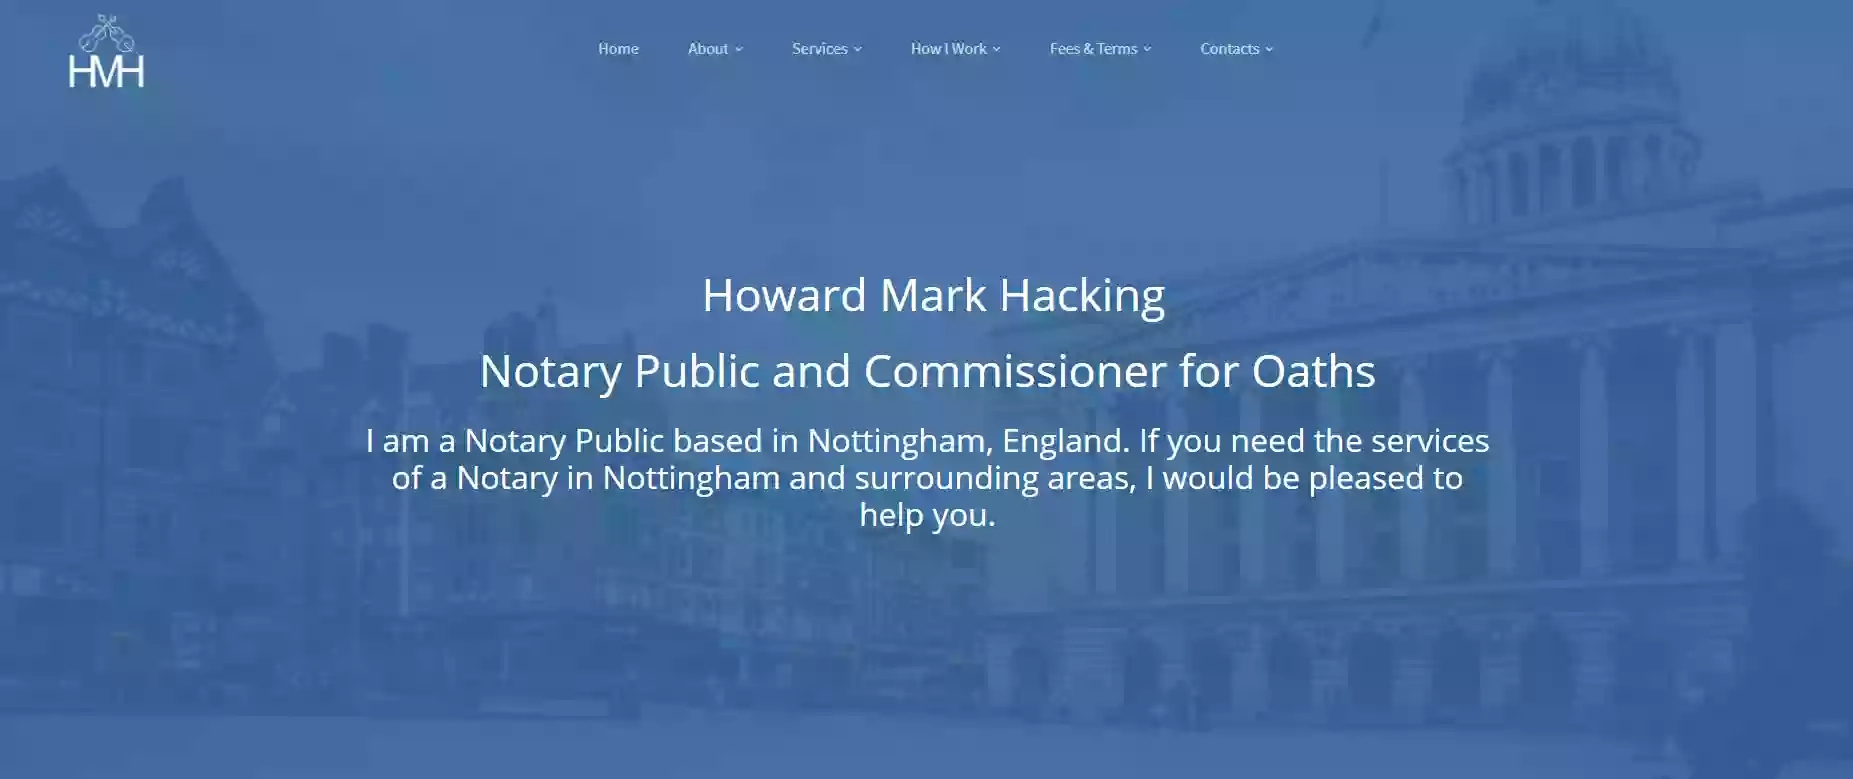 Howard Mark Hacking